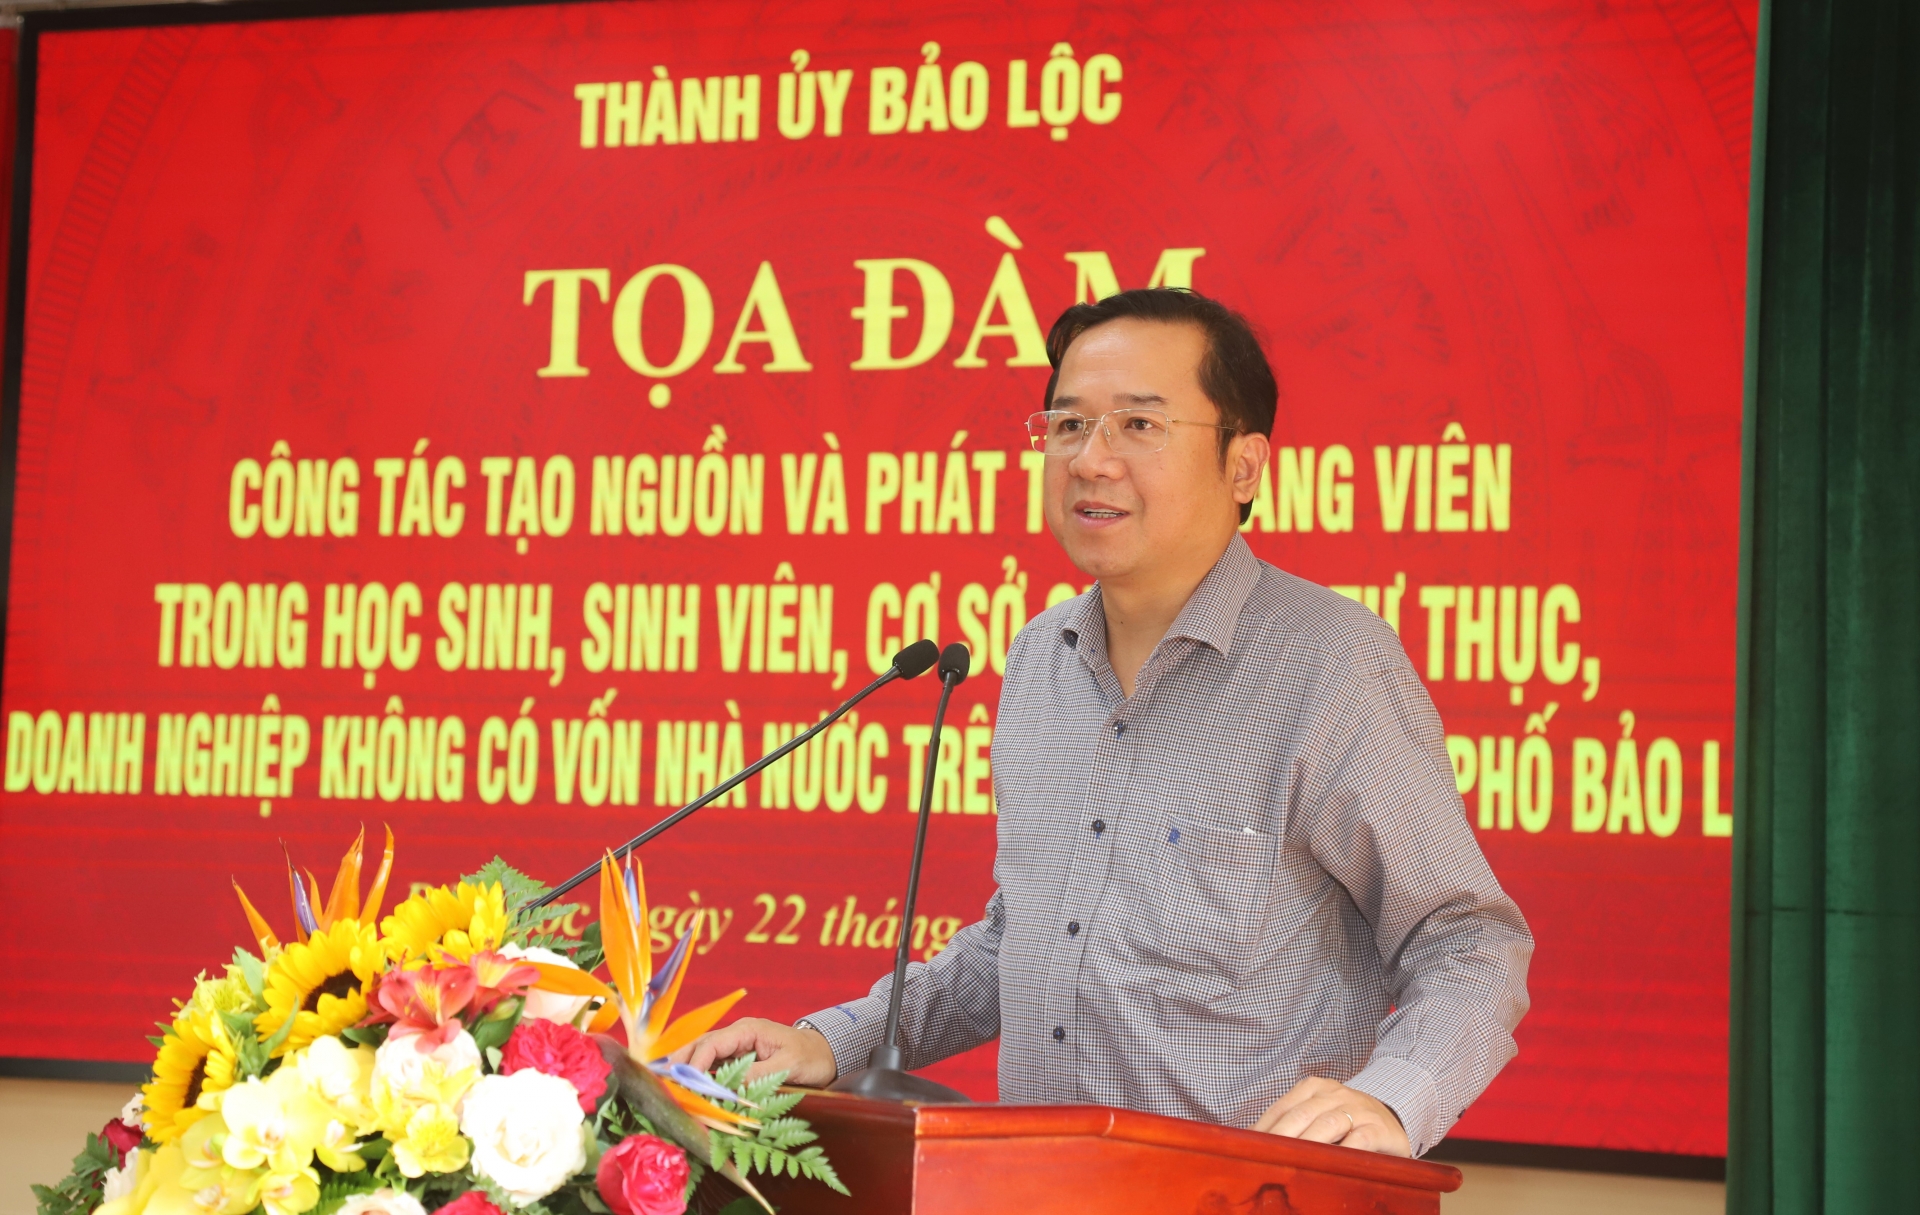 Đồng chí Tôn Thiện Đồng - Ủy viên Ban Thường vụ Tỉnh ủy, Bí thư Thành ủy Bảo Lộc phát biểu chỉ đạo tại buổi tọa đàm